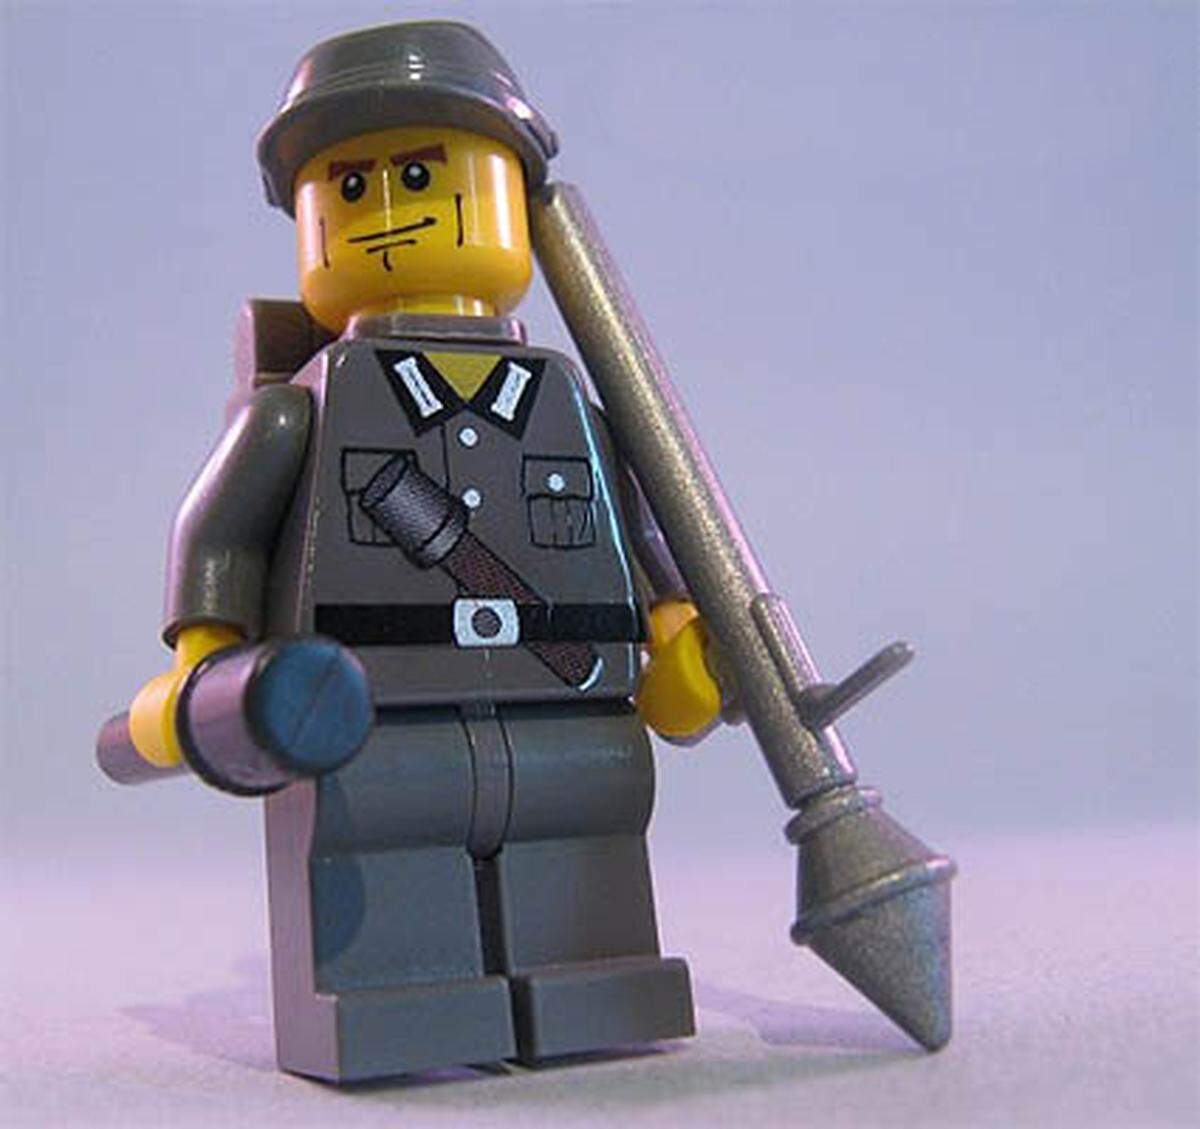 Grenadiere hantieren zudem gerne mit einer Plastik-Panzerfaust. Da fliegen die Legosteine!